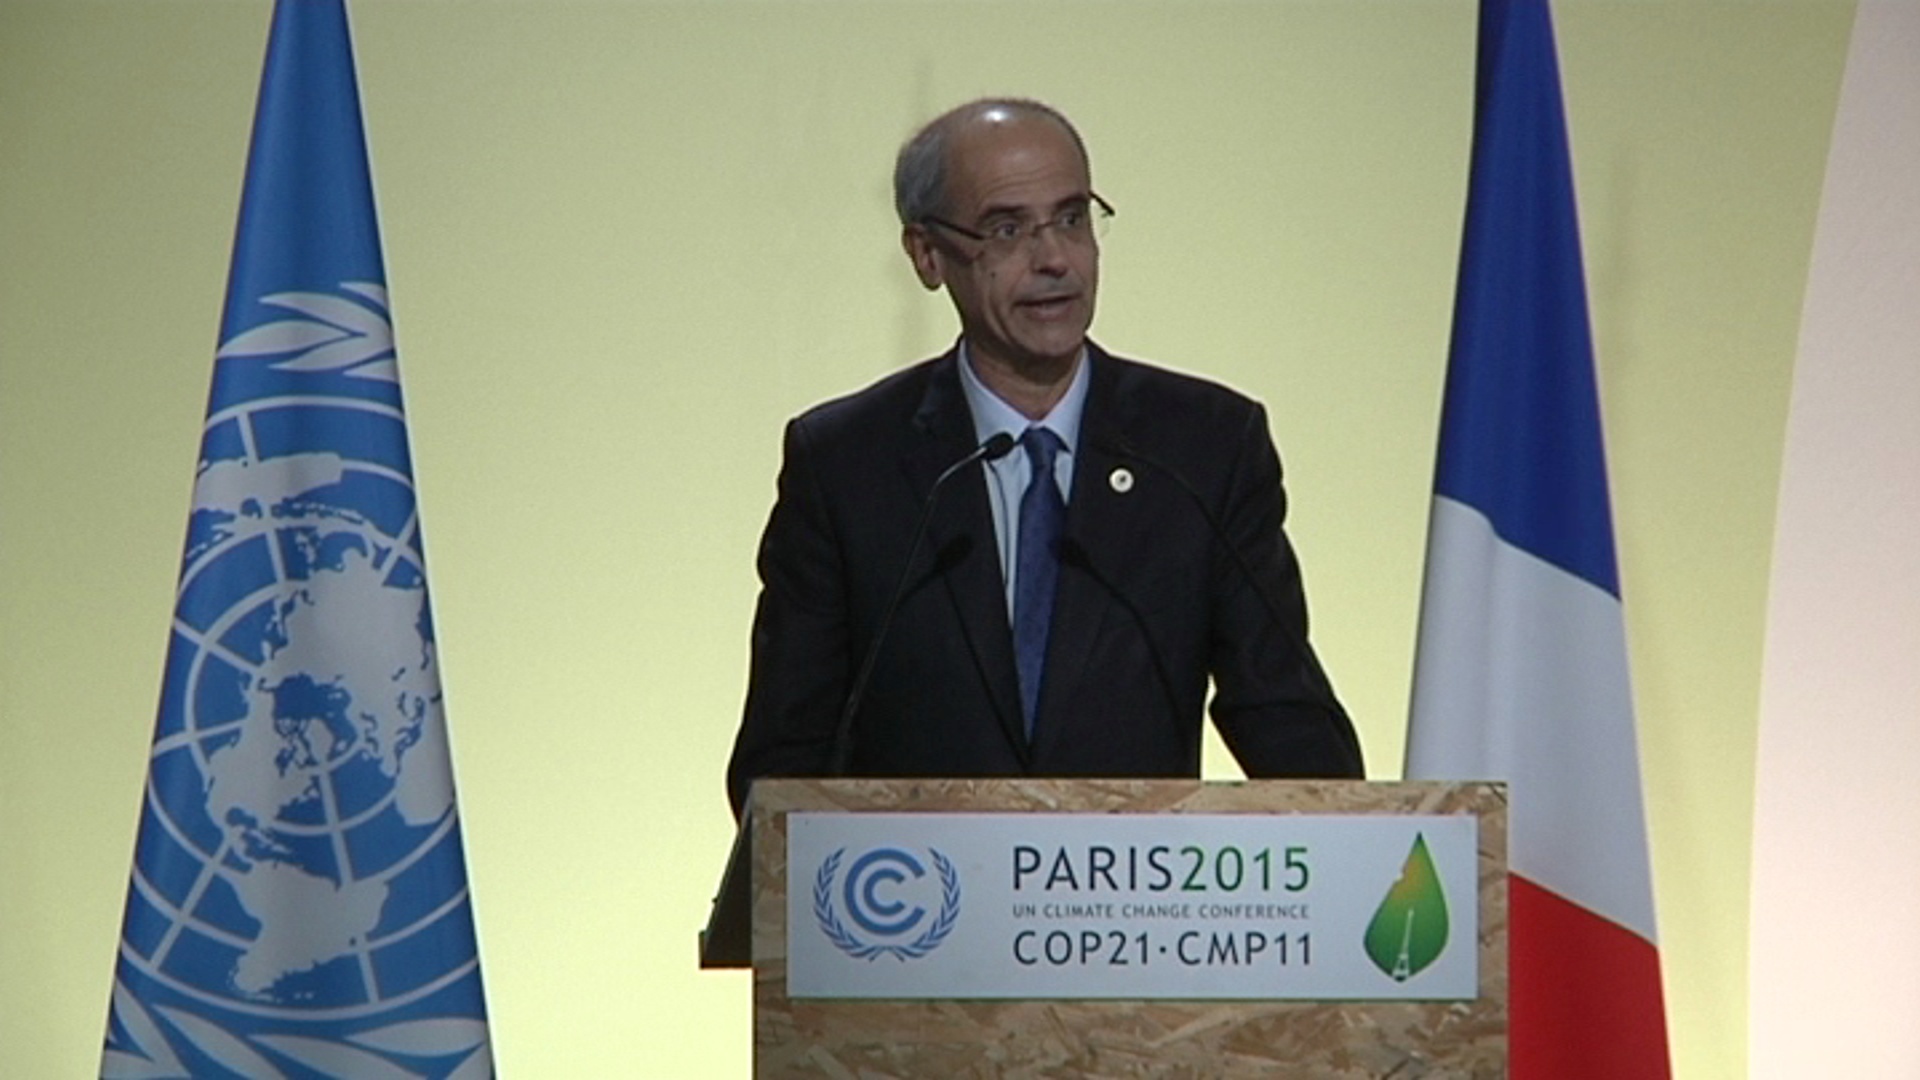 Discurs del cap de Govern al COP21 a París